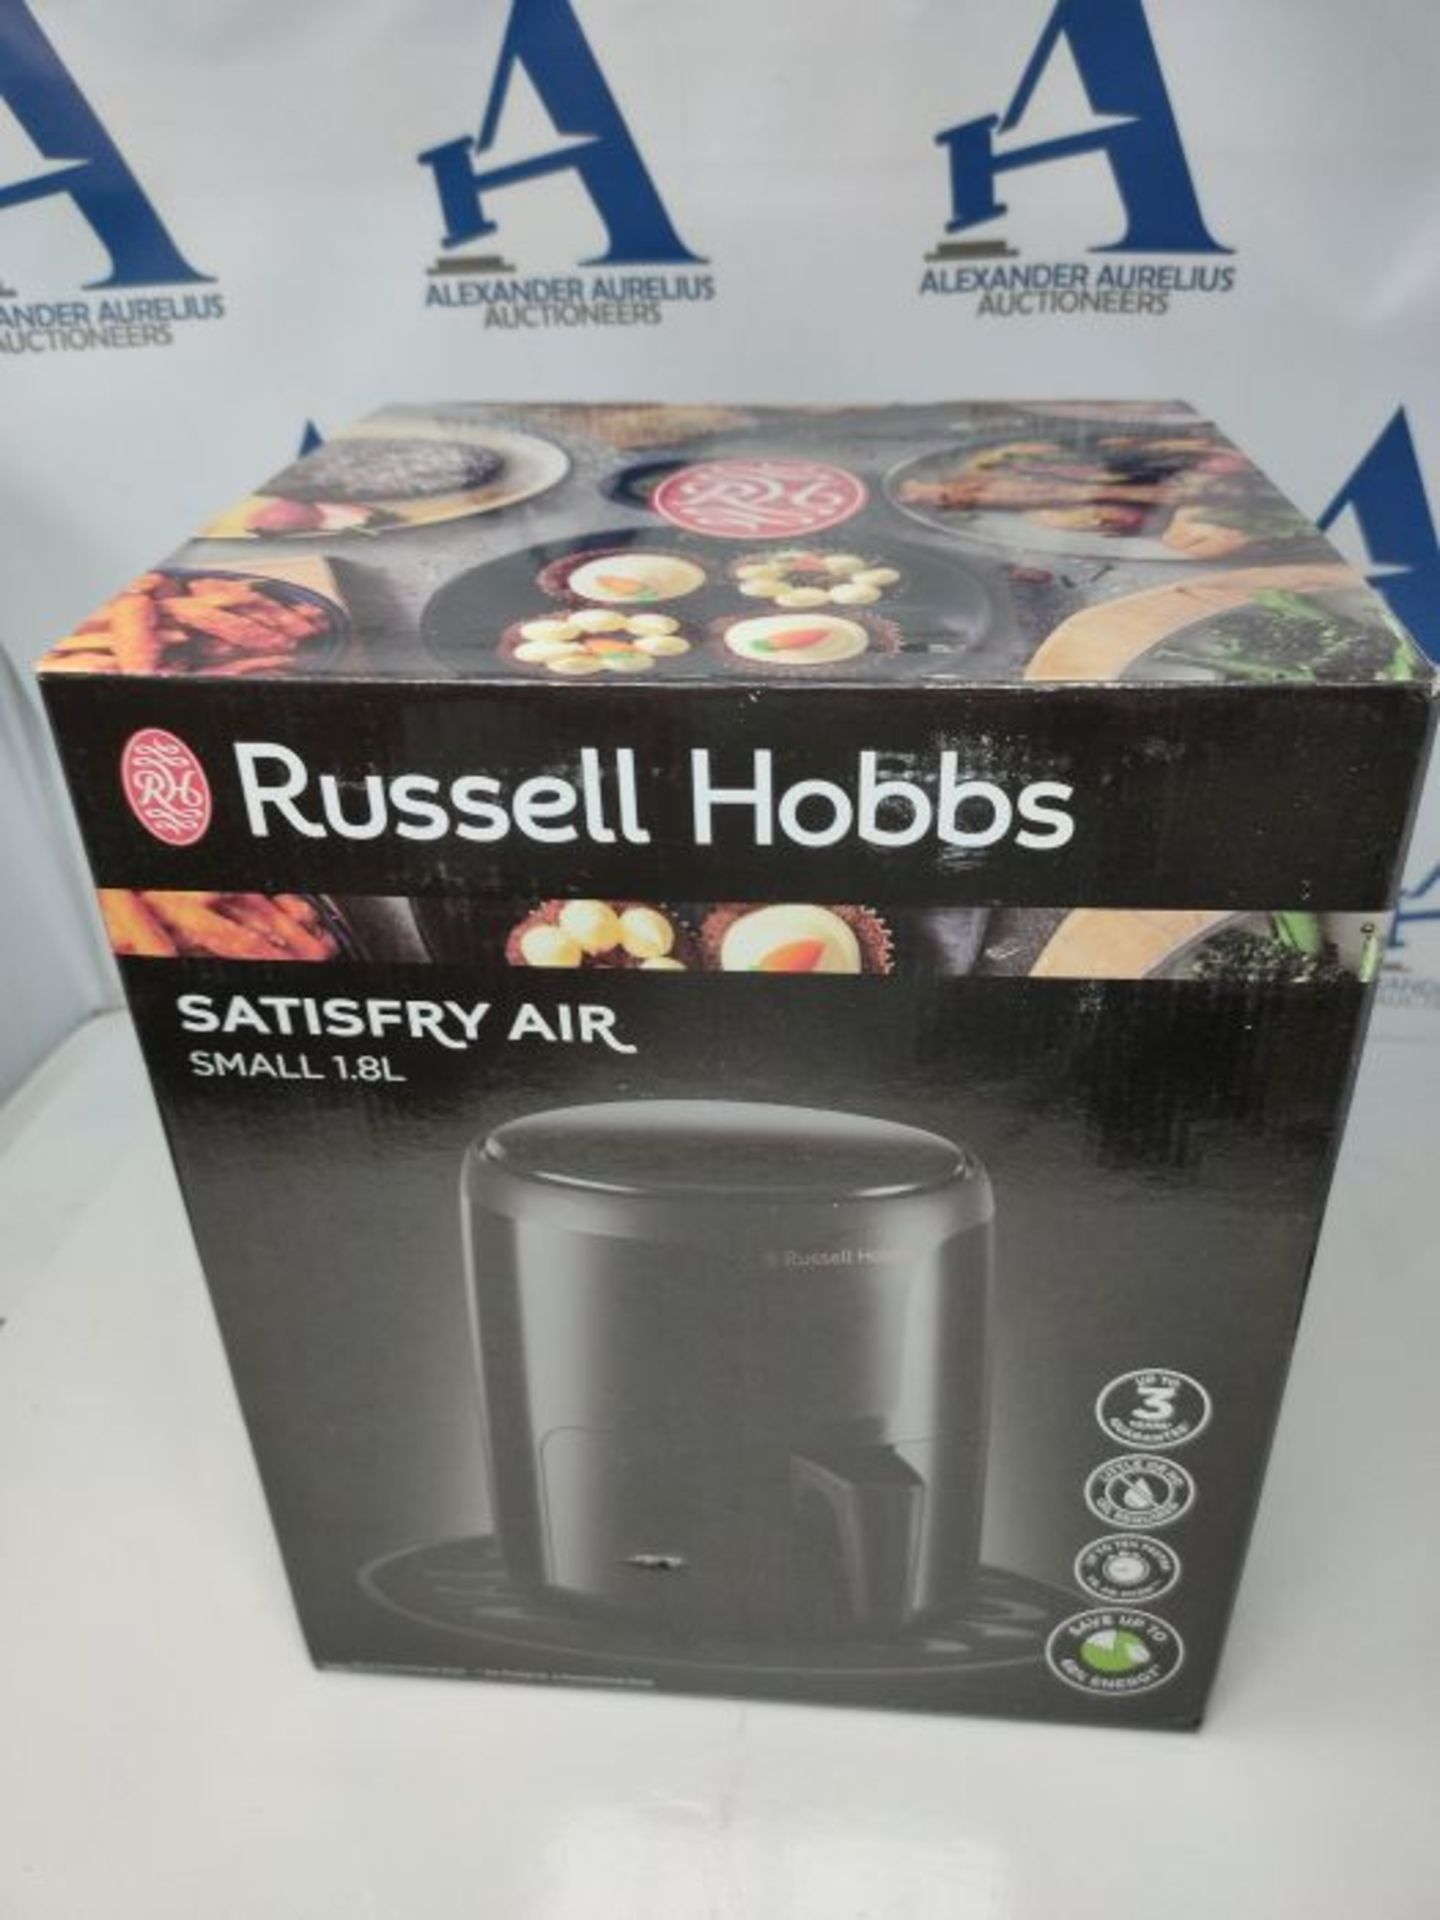 Russell Hobbs 26500 SatisFry Small Digital Air Fryer, Energy Saving Airfryer that is 7